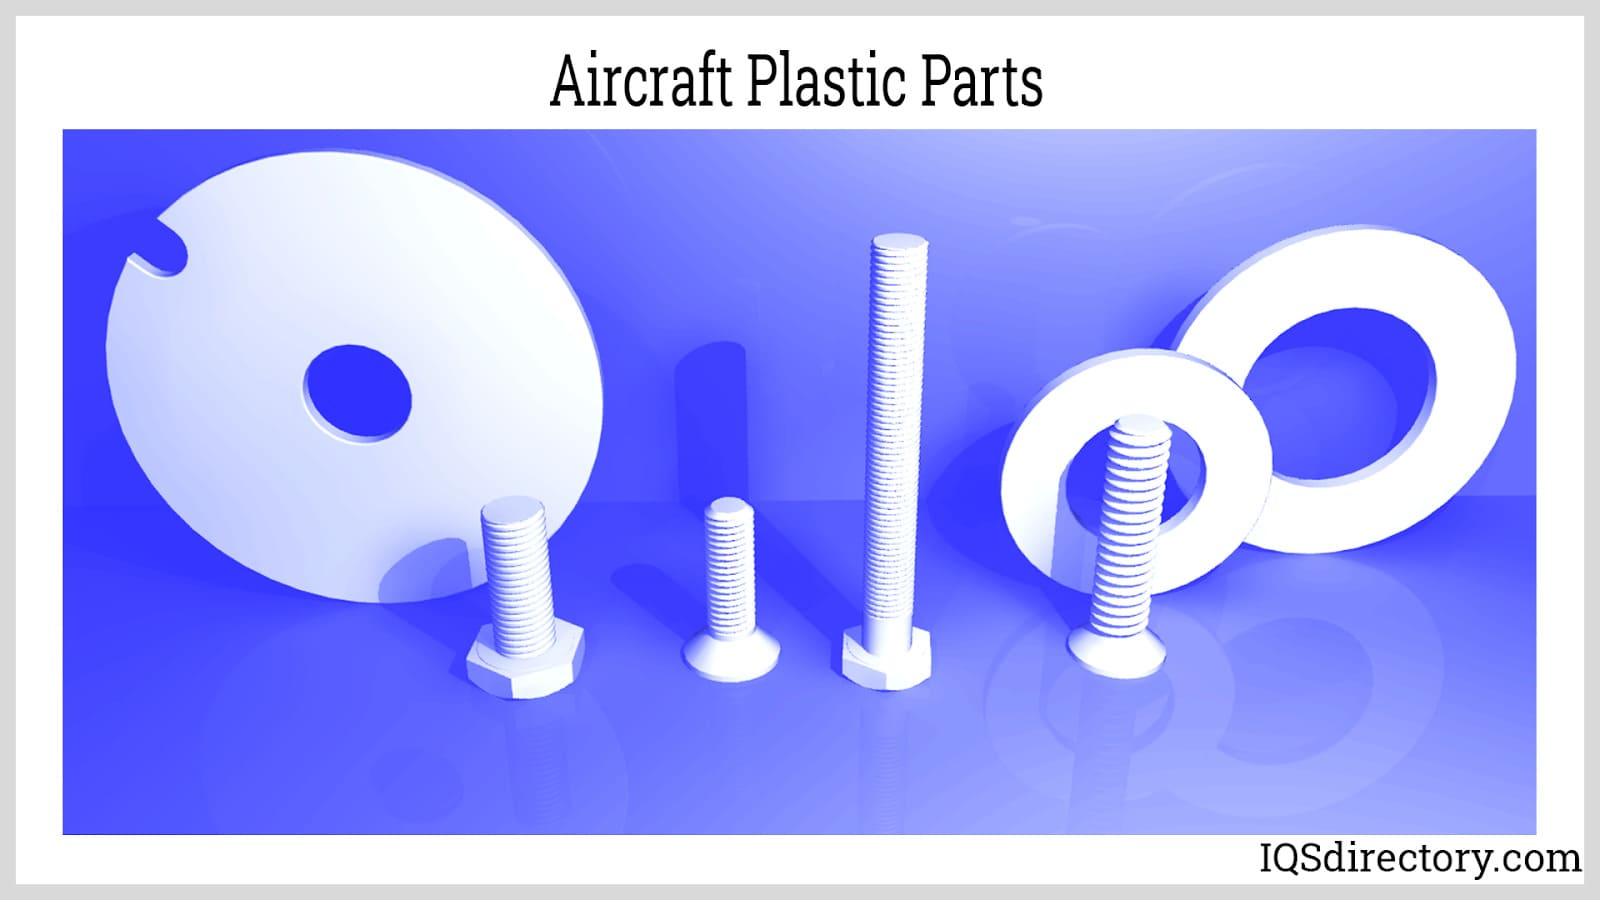 Aircraft Plastic Parts